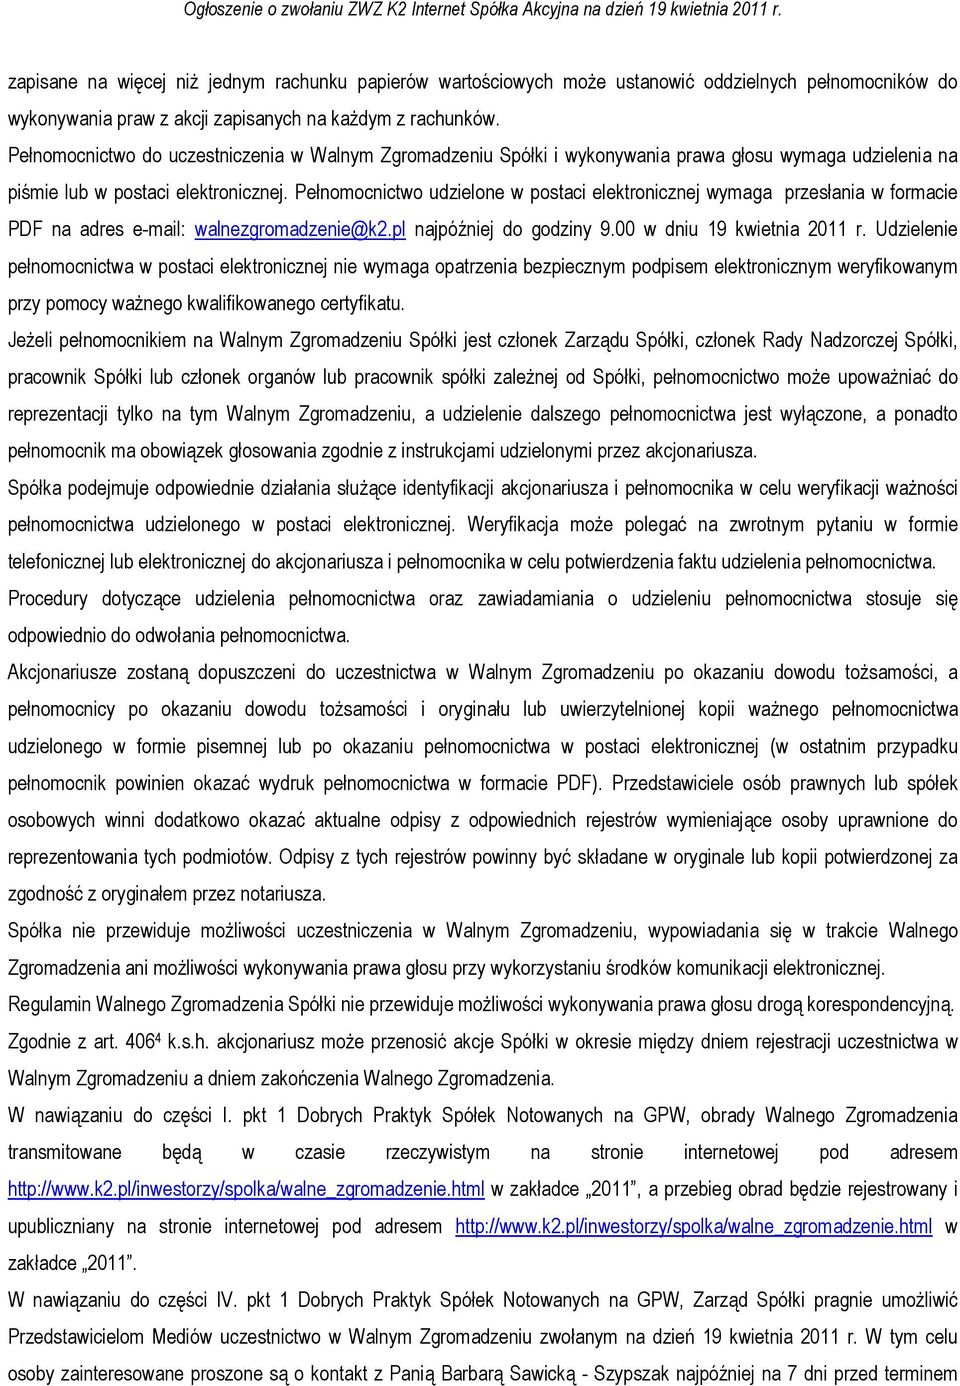 Pełnomocnictwo udzielone w postaci elektronicznej wymaga przesłania w formacie PDF na adres e-mail: walnezgromadzenie@k2.pl najpóźniej do godziny 9.00 w dniu 19 kwietnia 2011 r.